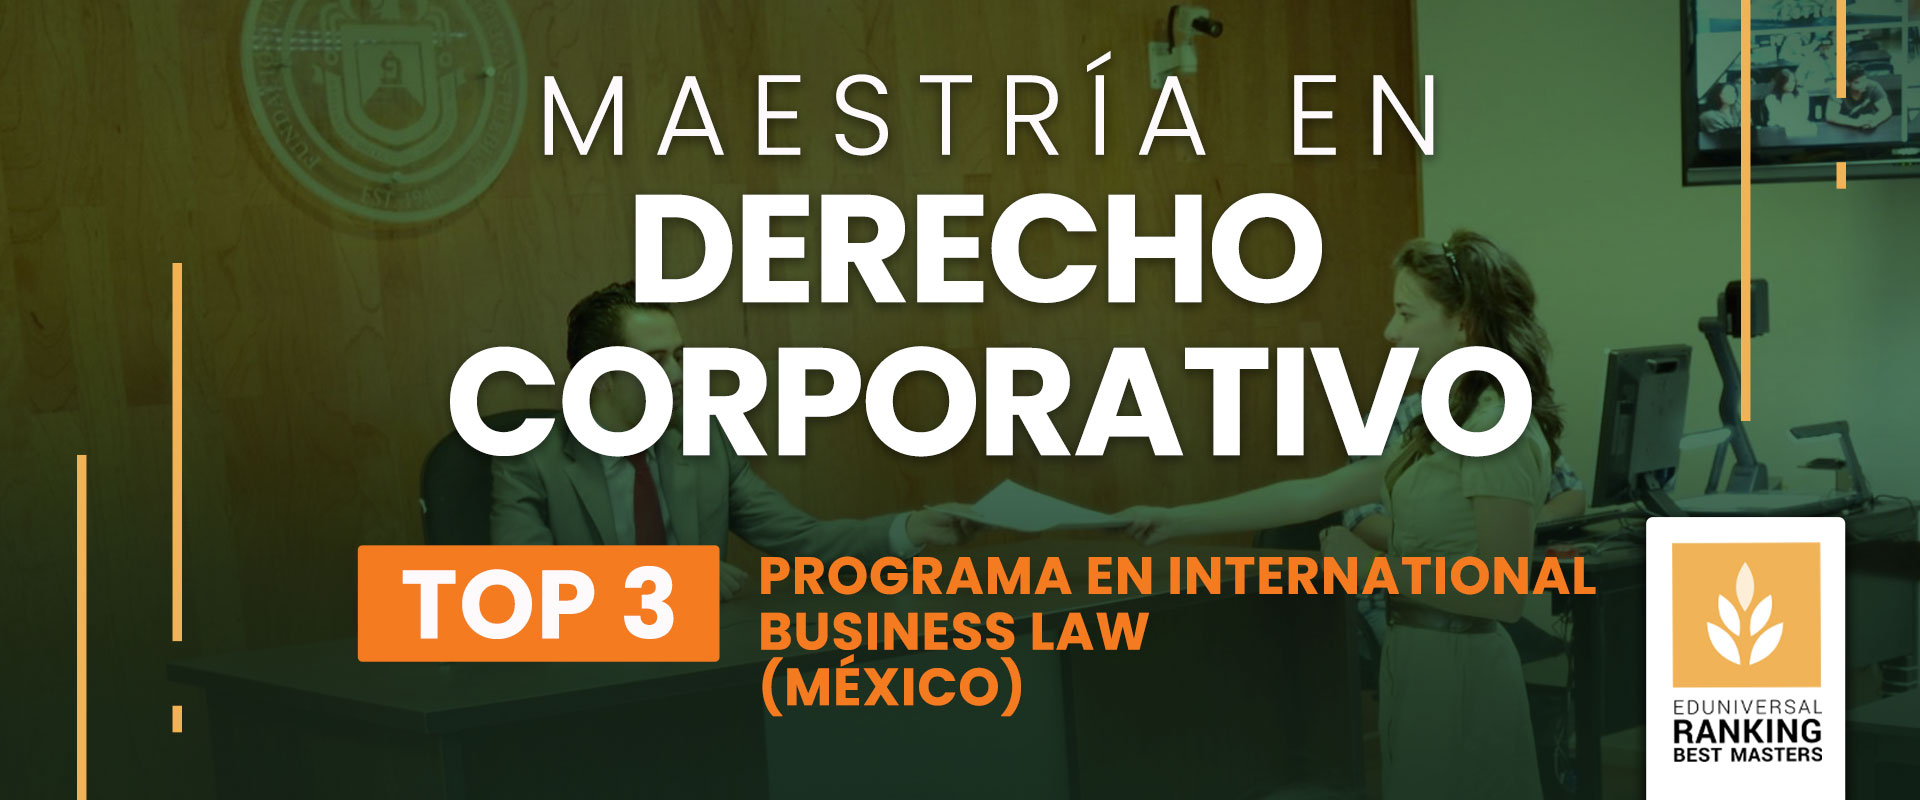 Maestría en Derecho Corporativo - Universidad de las Américas Puebla (UDLAP)